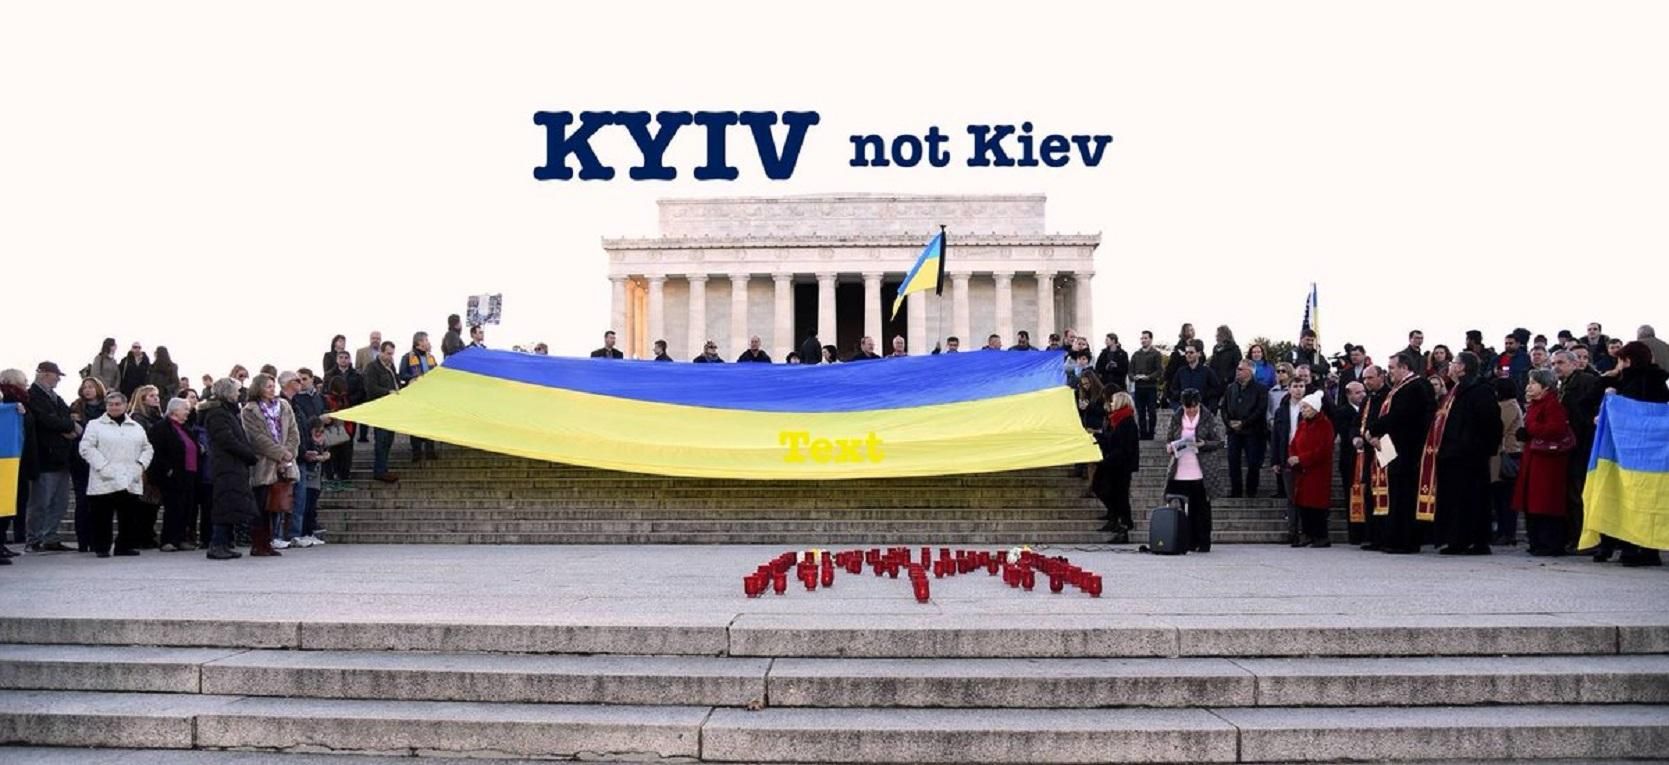 Kyiv not Kiev: BBC писатиме назву української столиці правильно